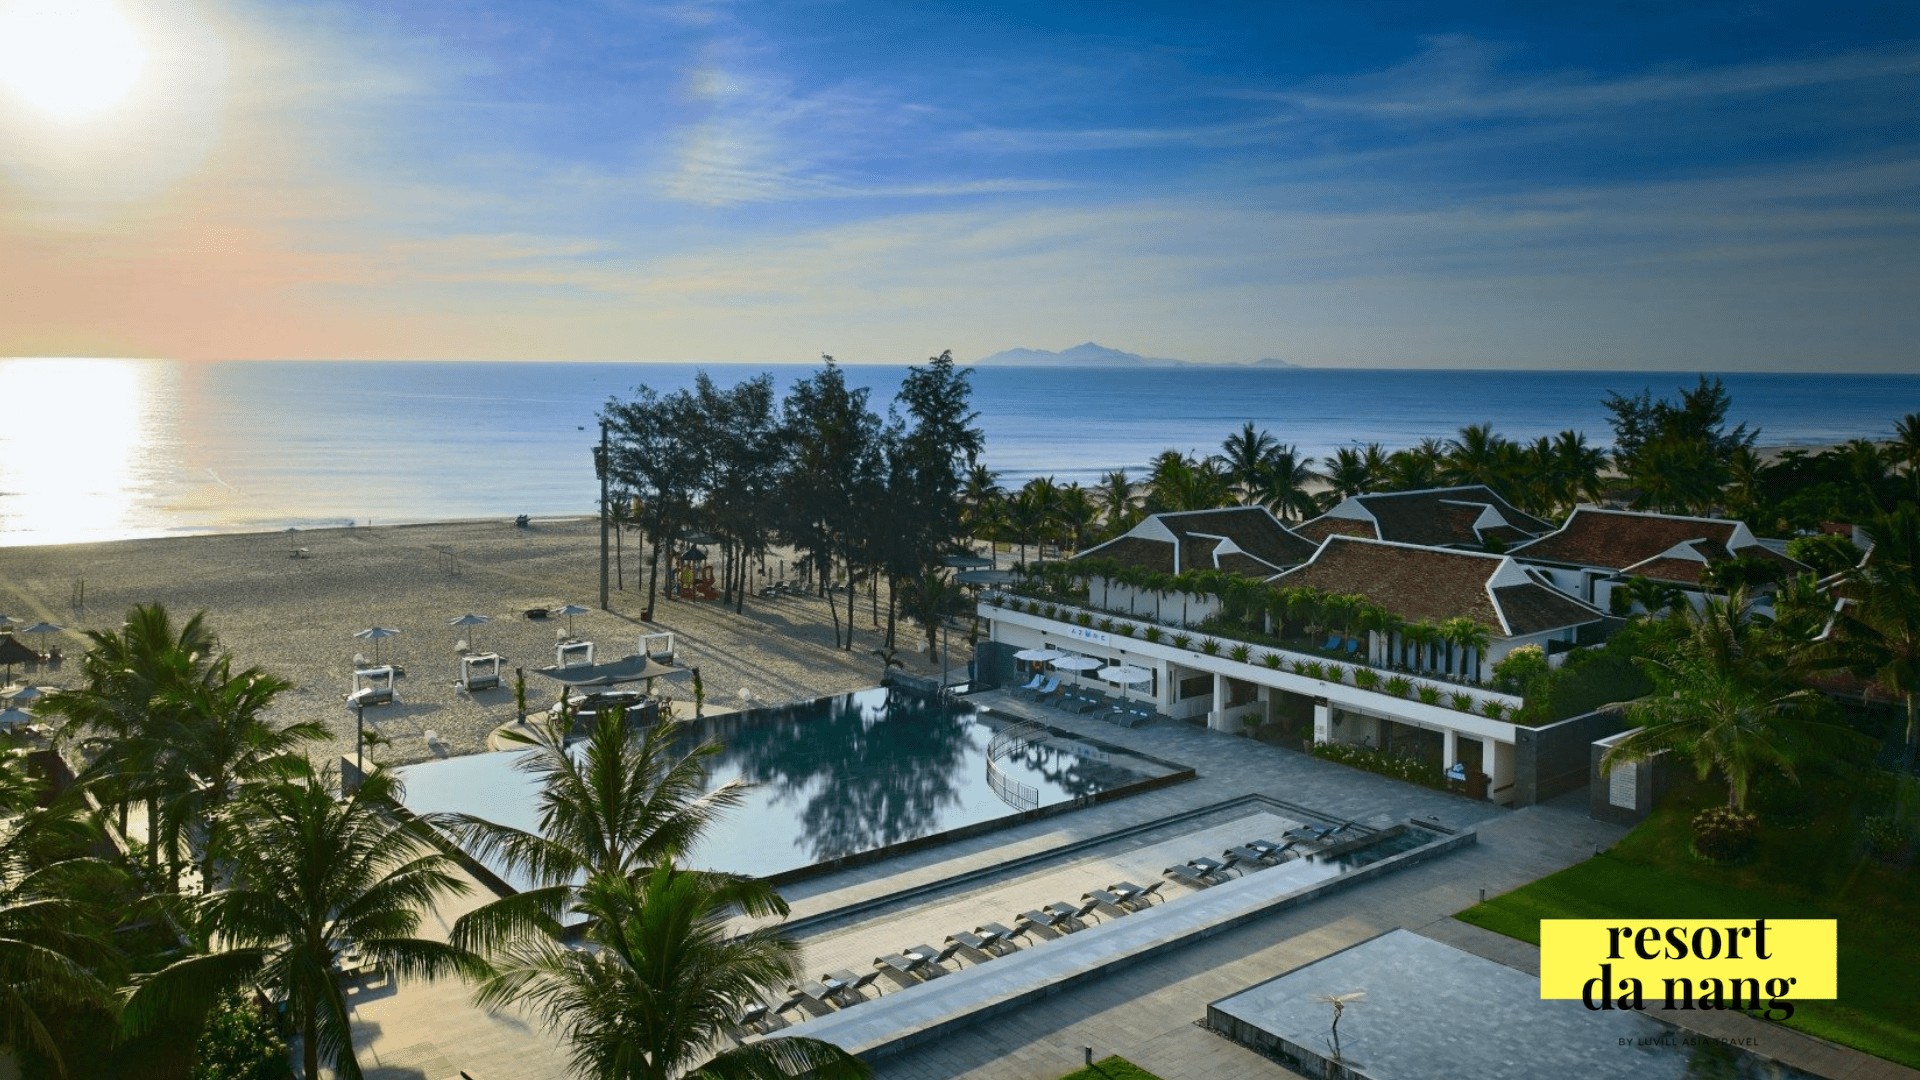 Cùng nhau đắm mình vào bãi biển xinh đẹp tại Pullman Resort Đà Nẵng